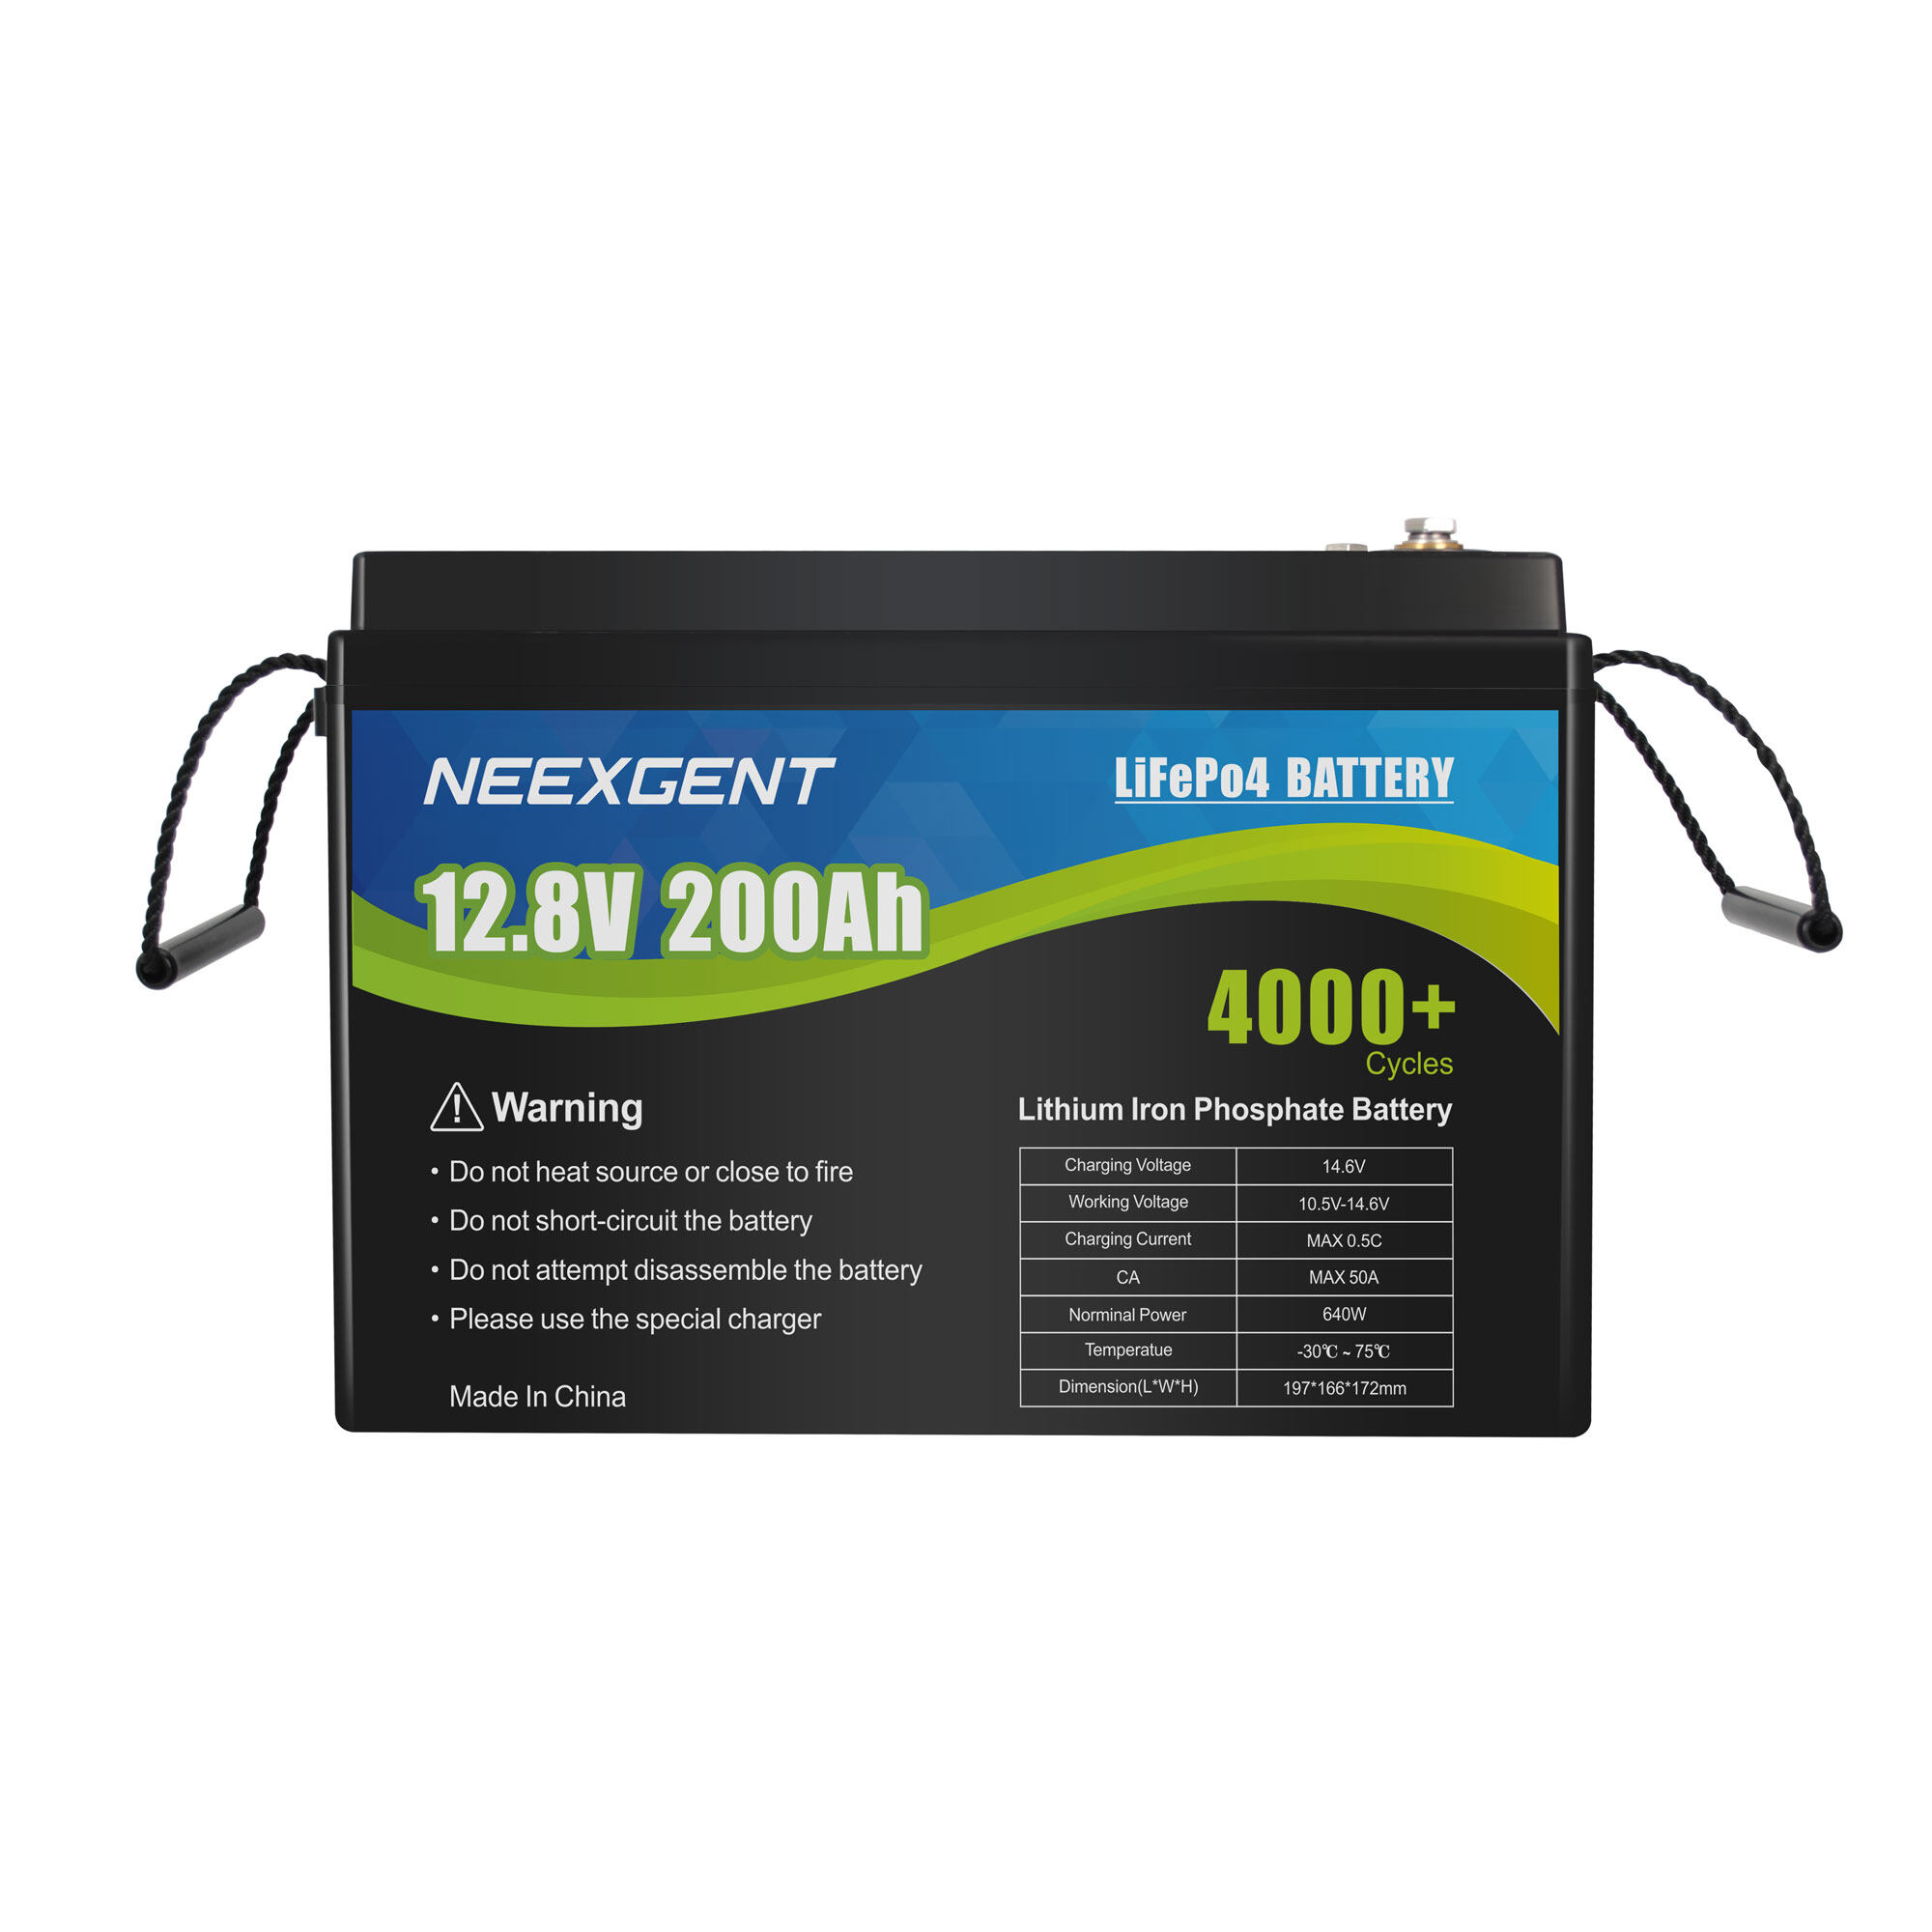 lifepo4 12.8v battery pack